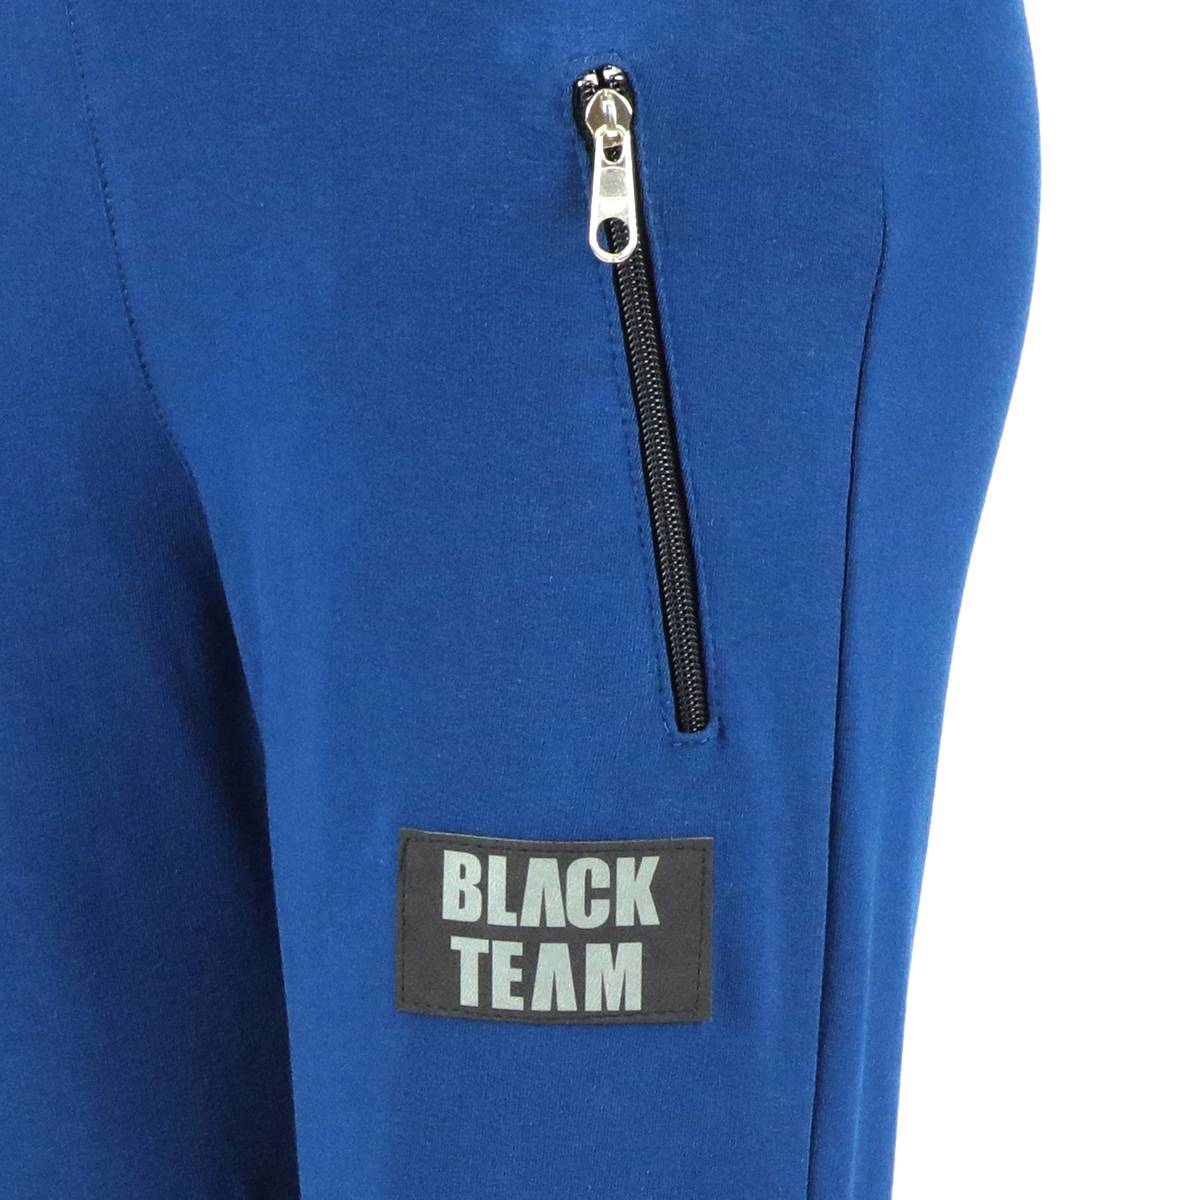 Spodnie dresowe dla chłopca, kolor niebieski, naszywka na nogawce Black Team Tup Tup